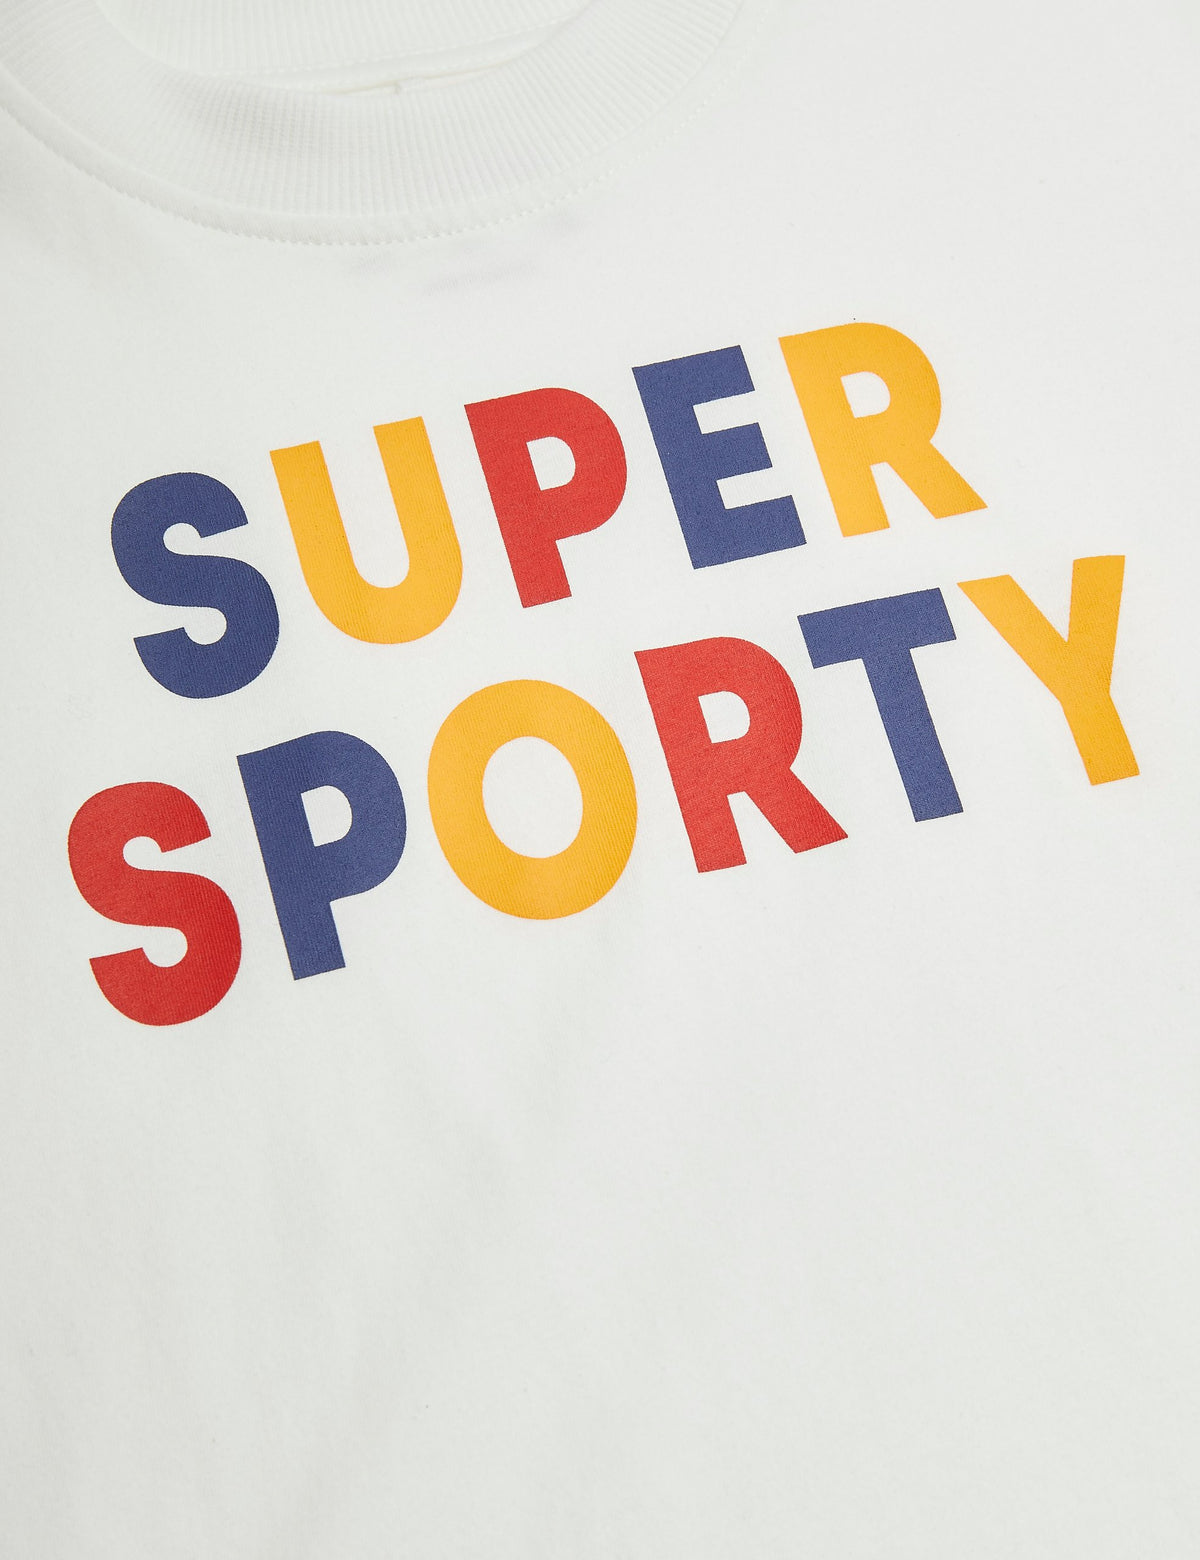 Super sporty T-shirts off white, Mini rodini